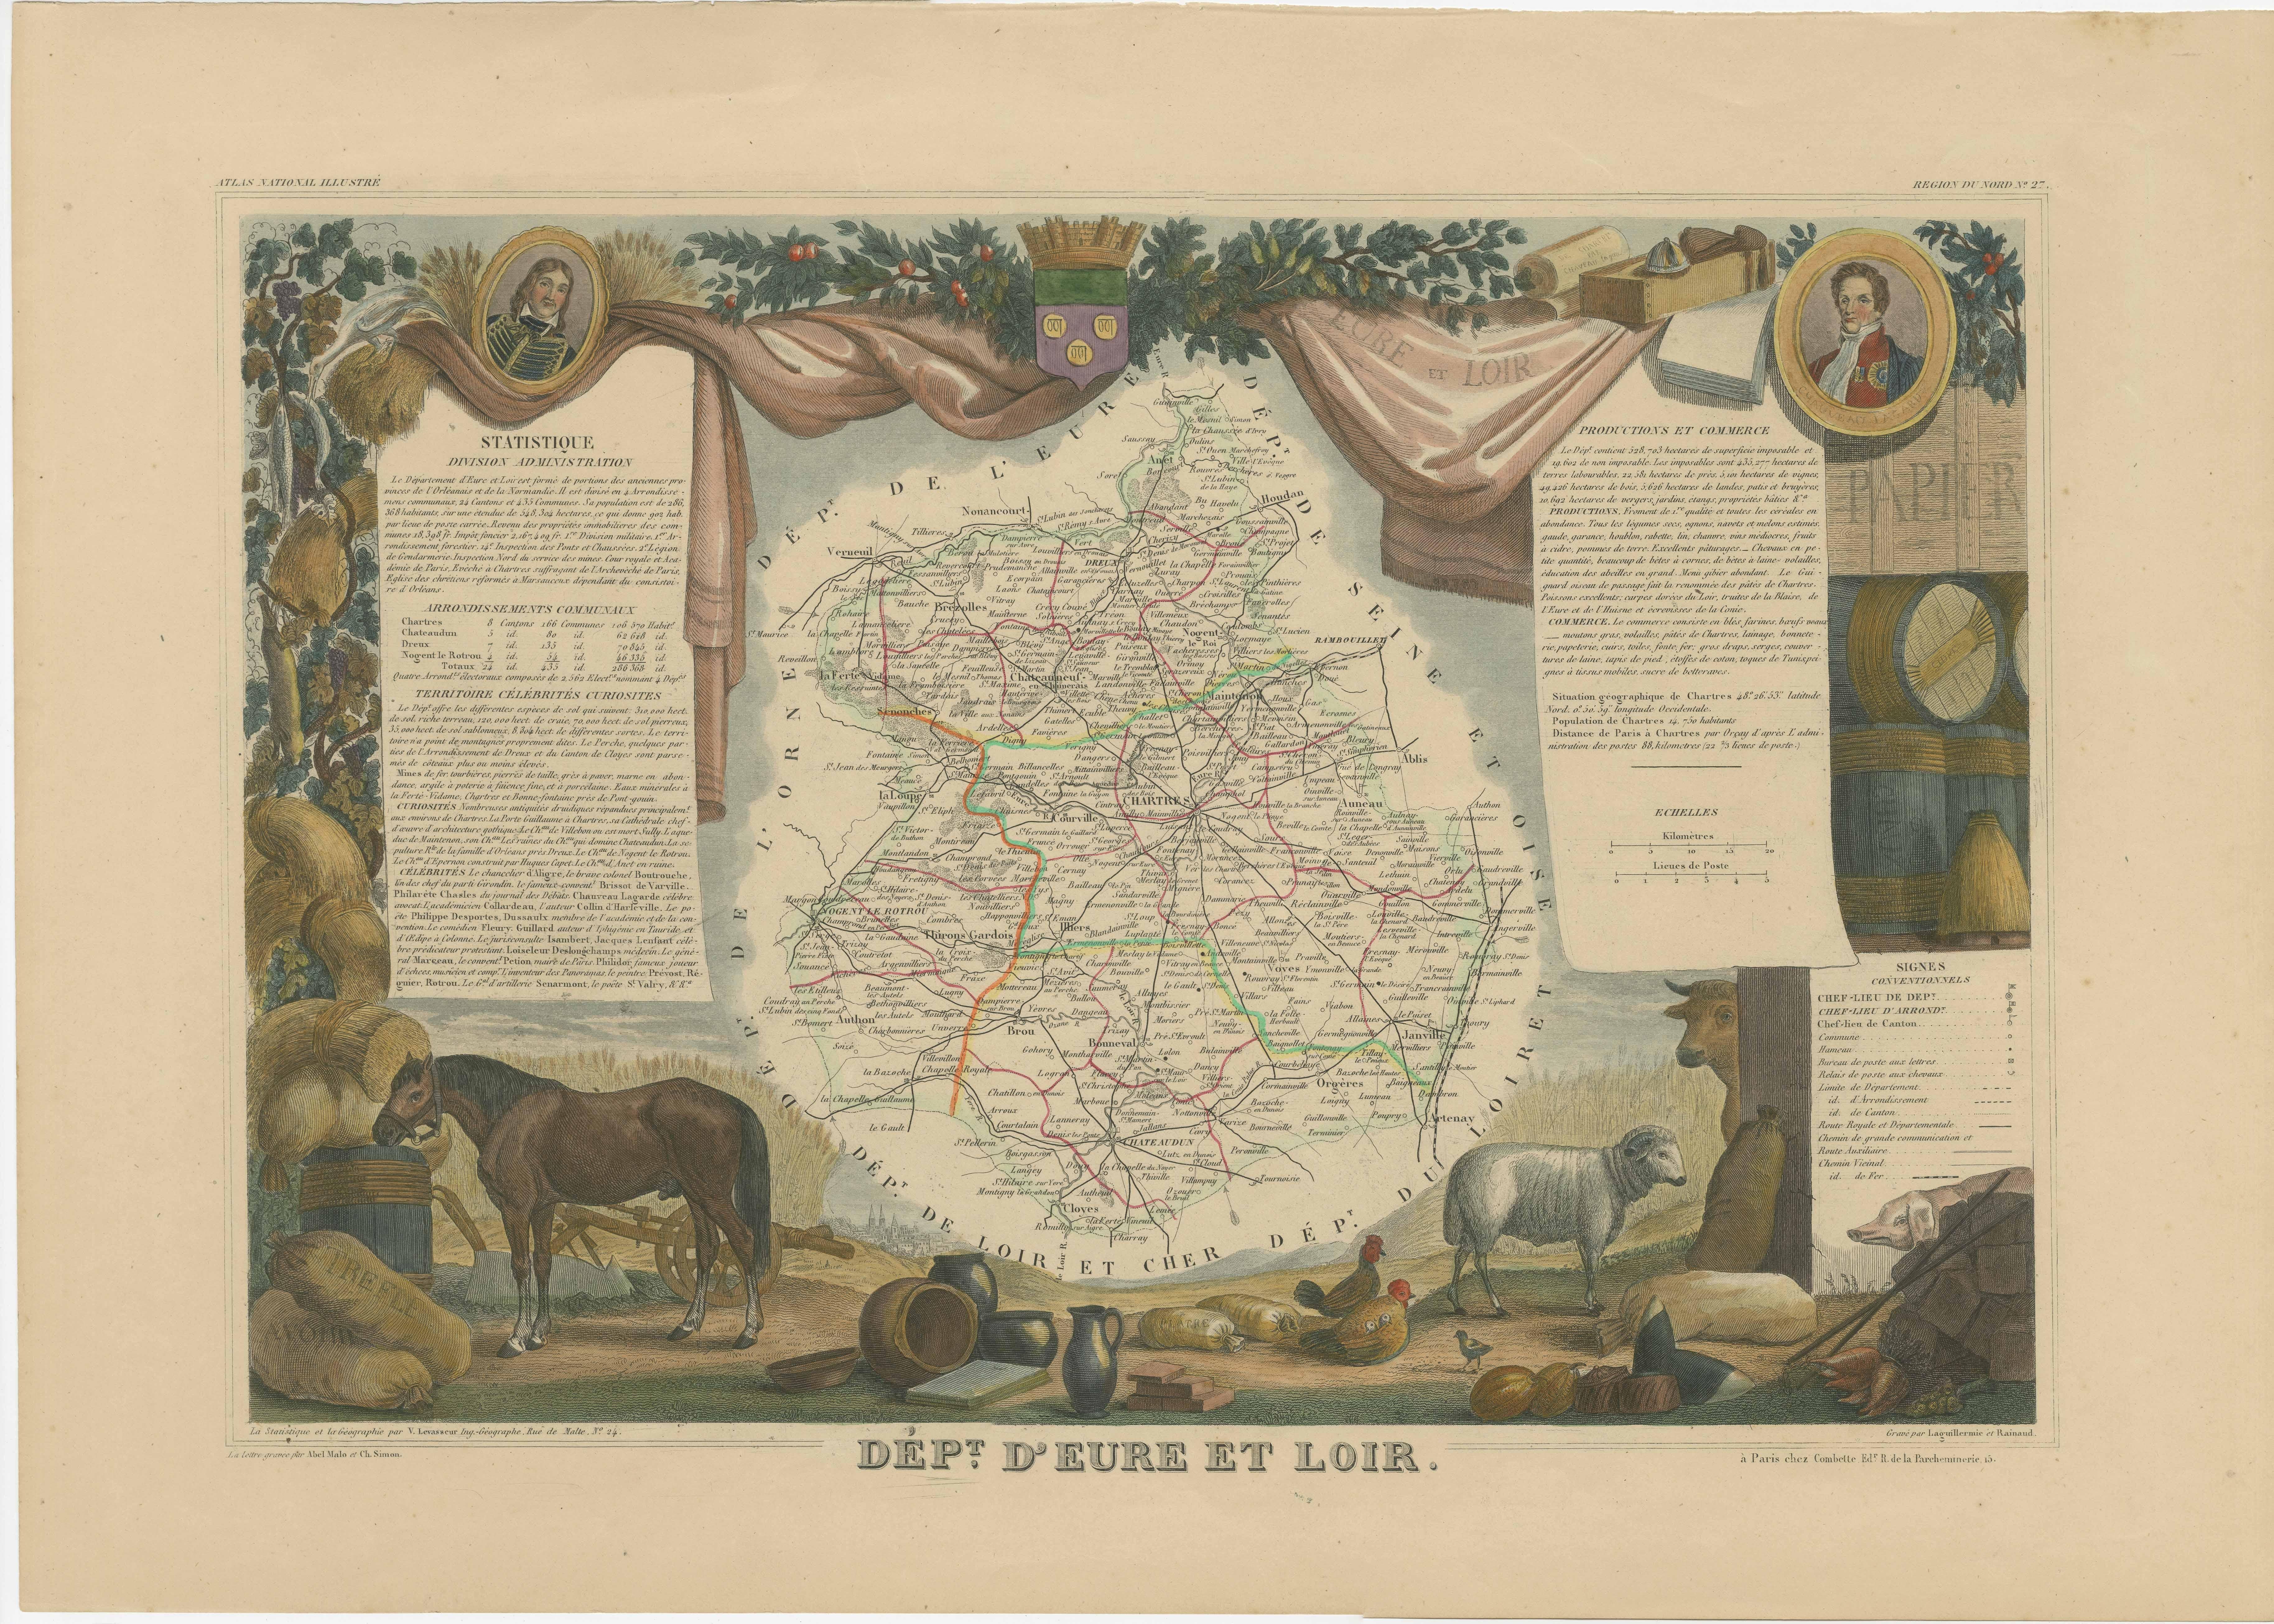 Antike Karte mit dem Titel 'Dépt. d'Eure et Loir'. Karte des französischen Departements Eure-et-Loir, Frankreich. In dieser Gegend befindet sich die berühmte Kathedrale von Chartres. Das Ganze ist von aufwendigen dekorativen Gravuren umgeben, die